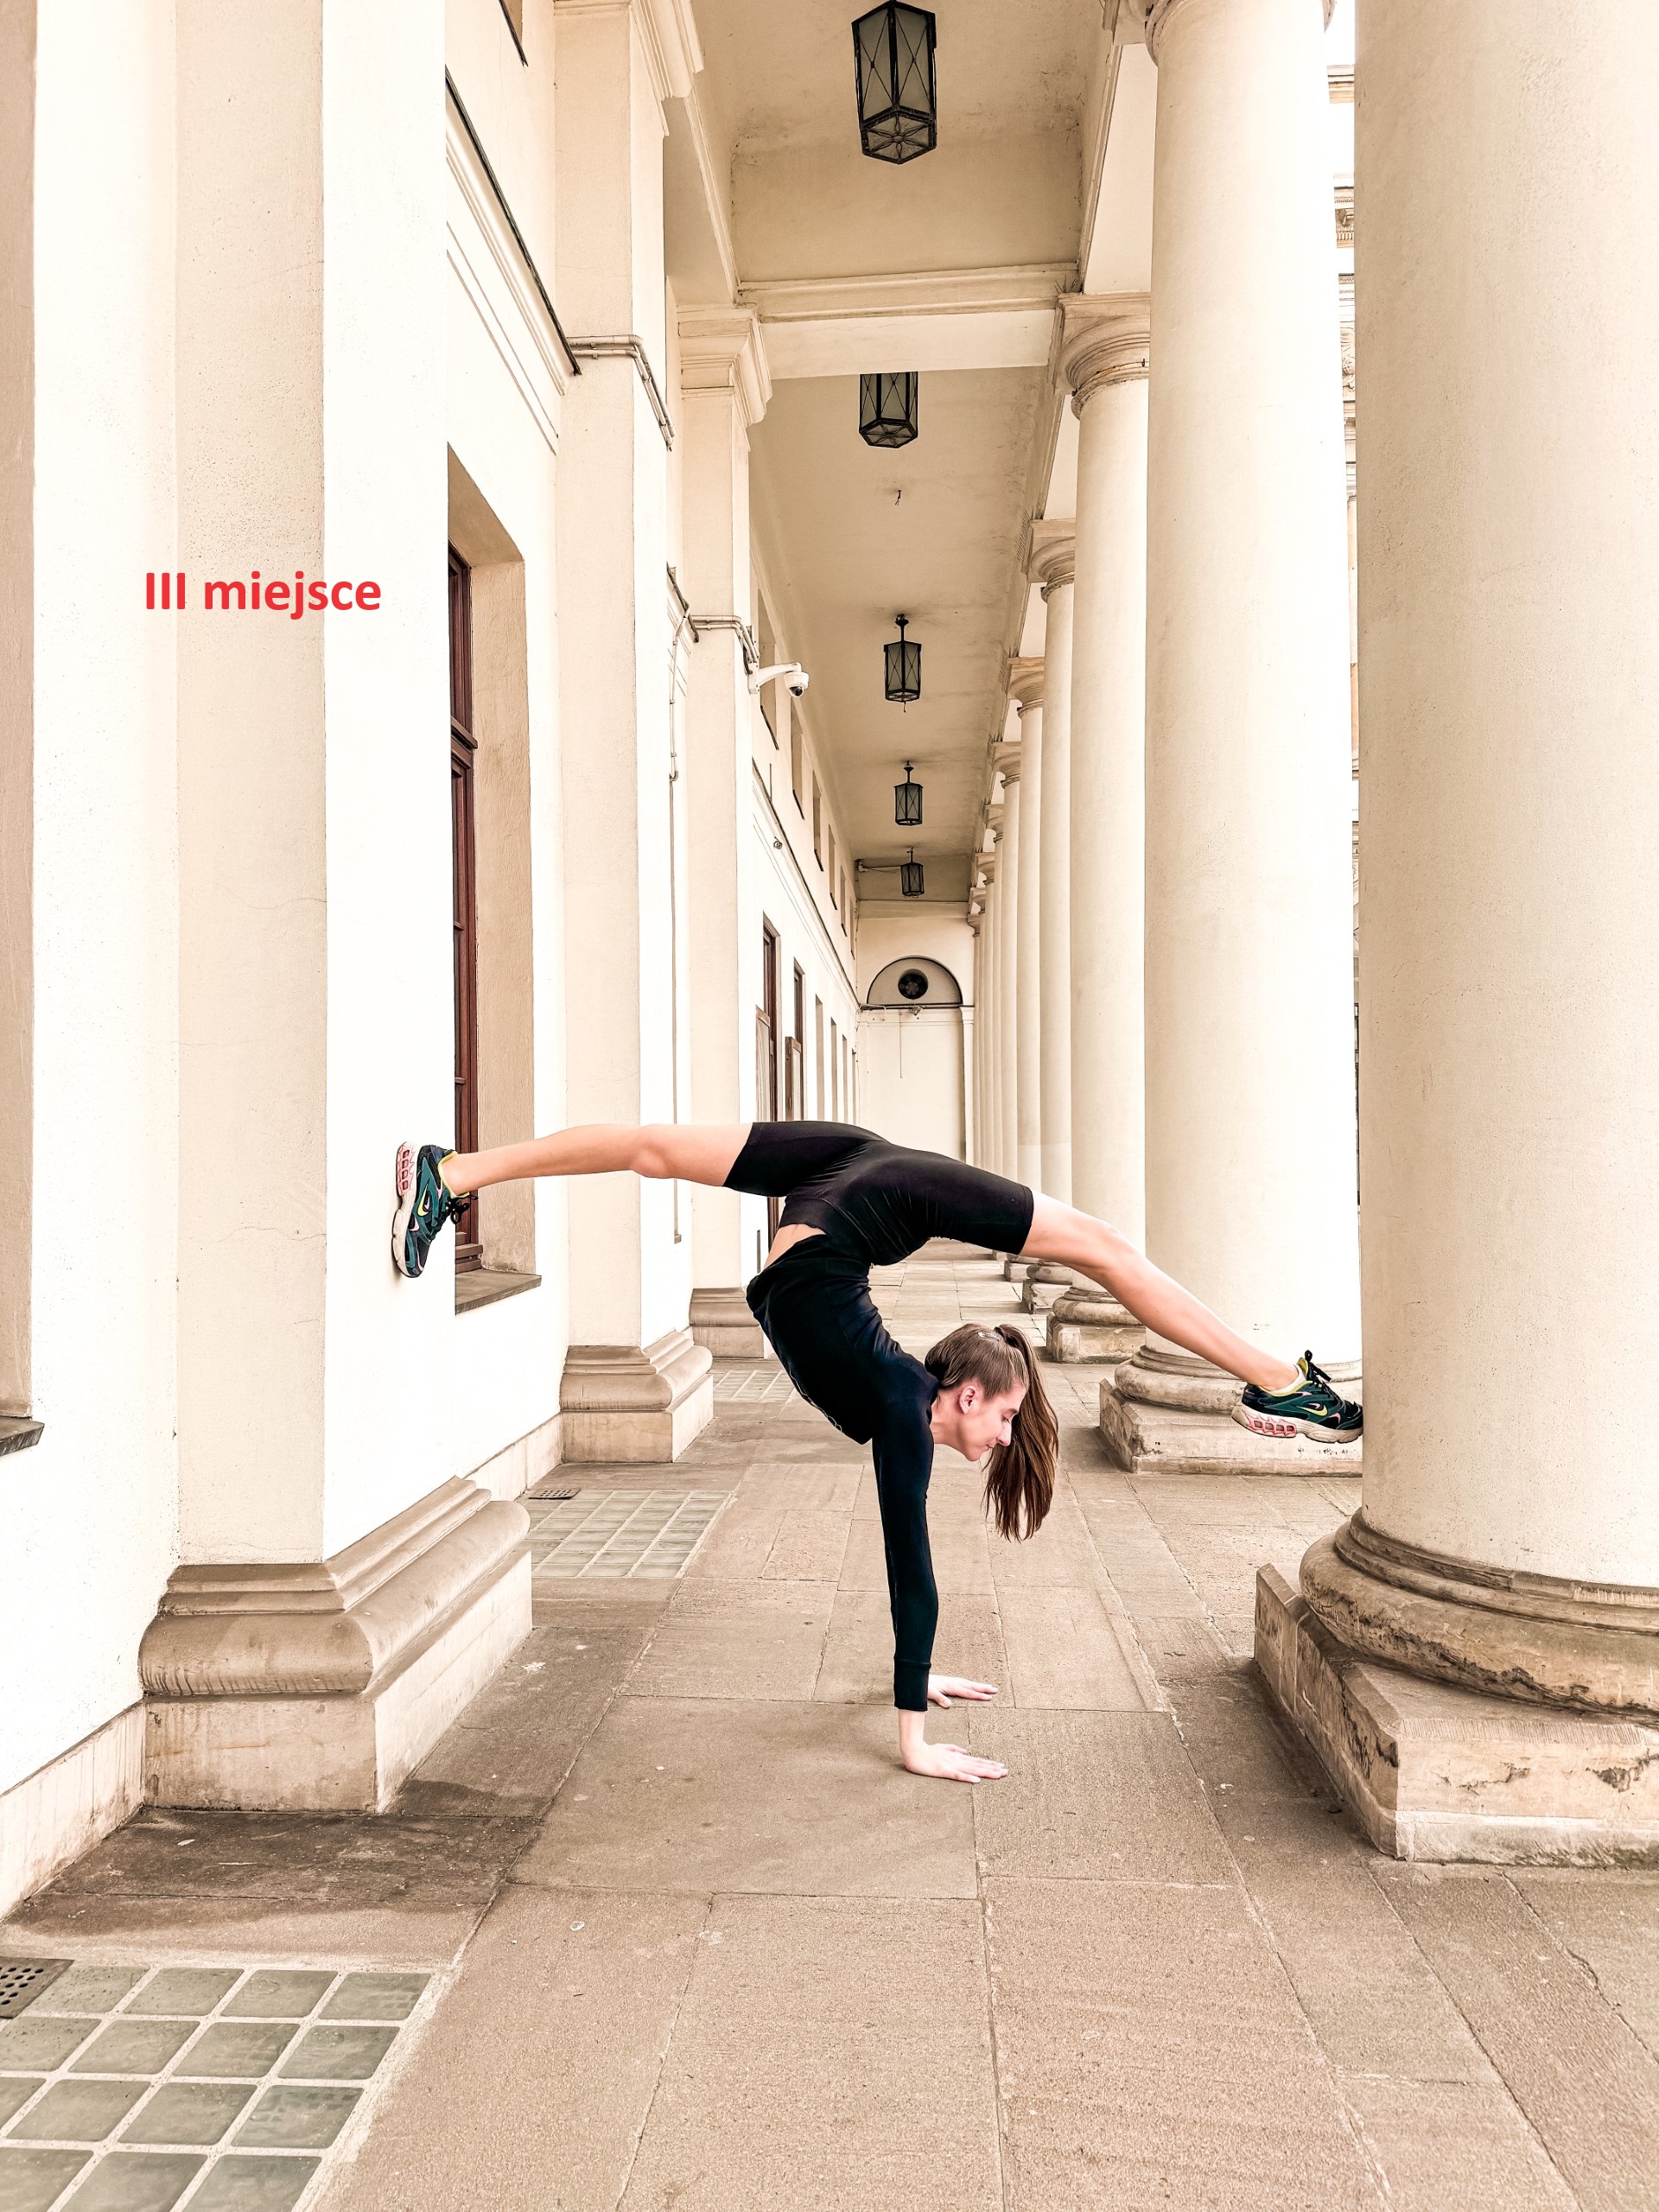 III miejsce - Julia Stawinoga, zdjęcie pt. „Gimnastyka to moja pasja”